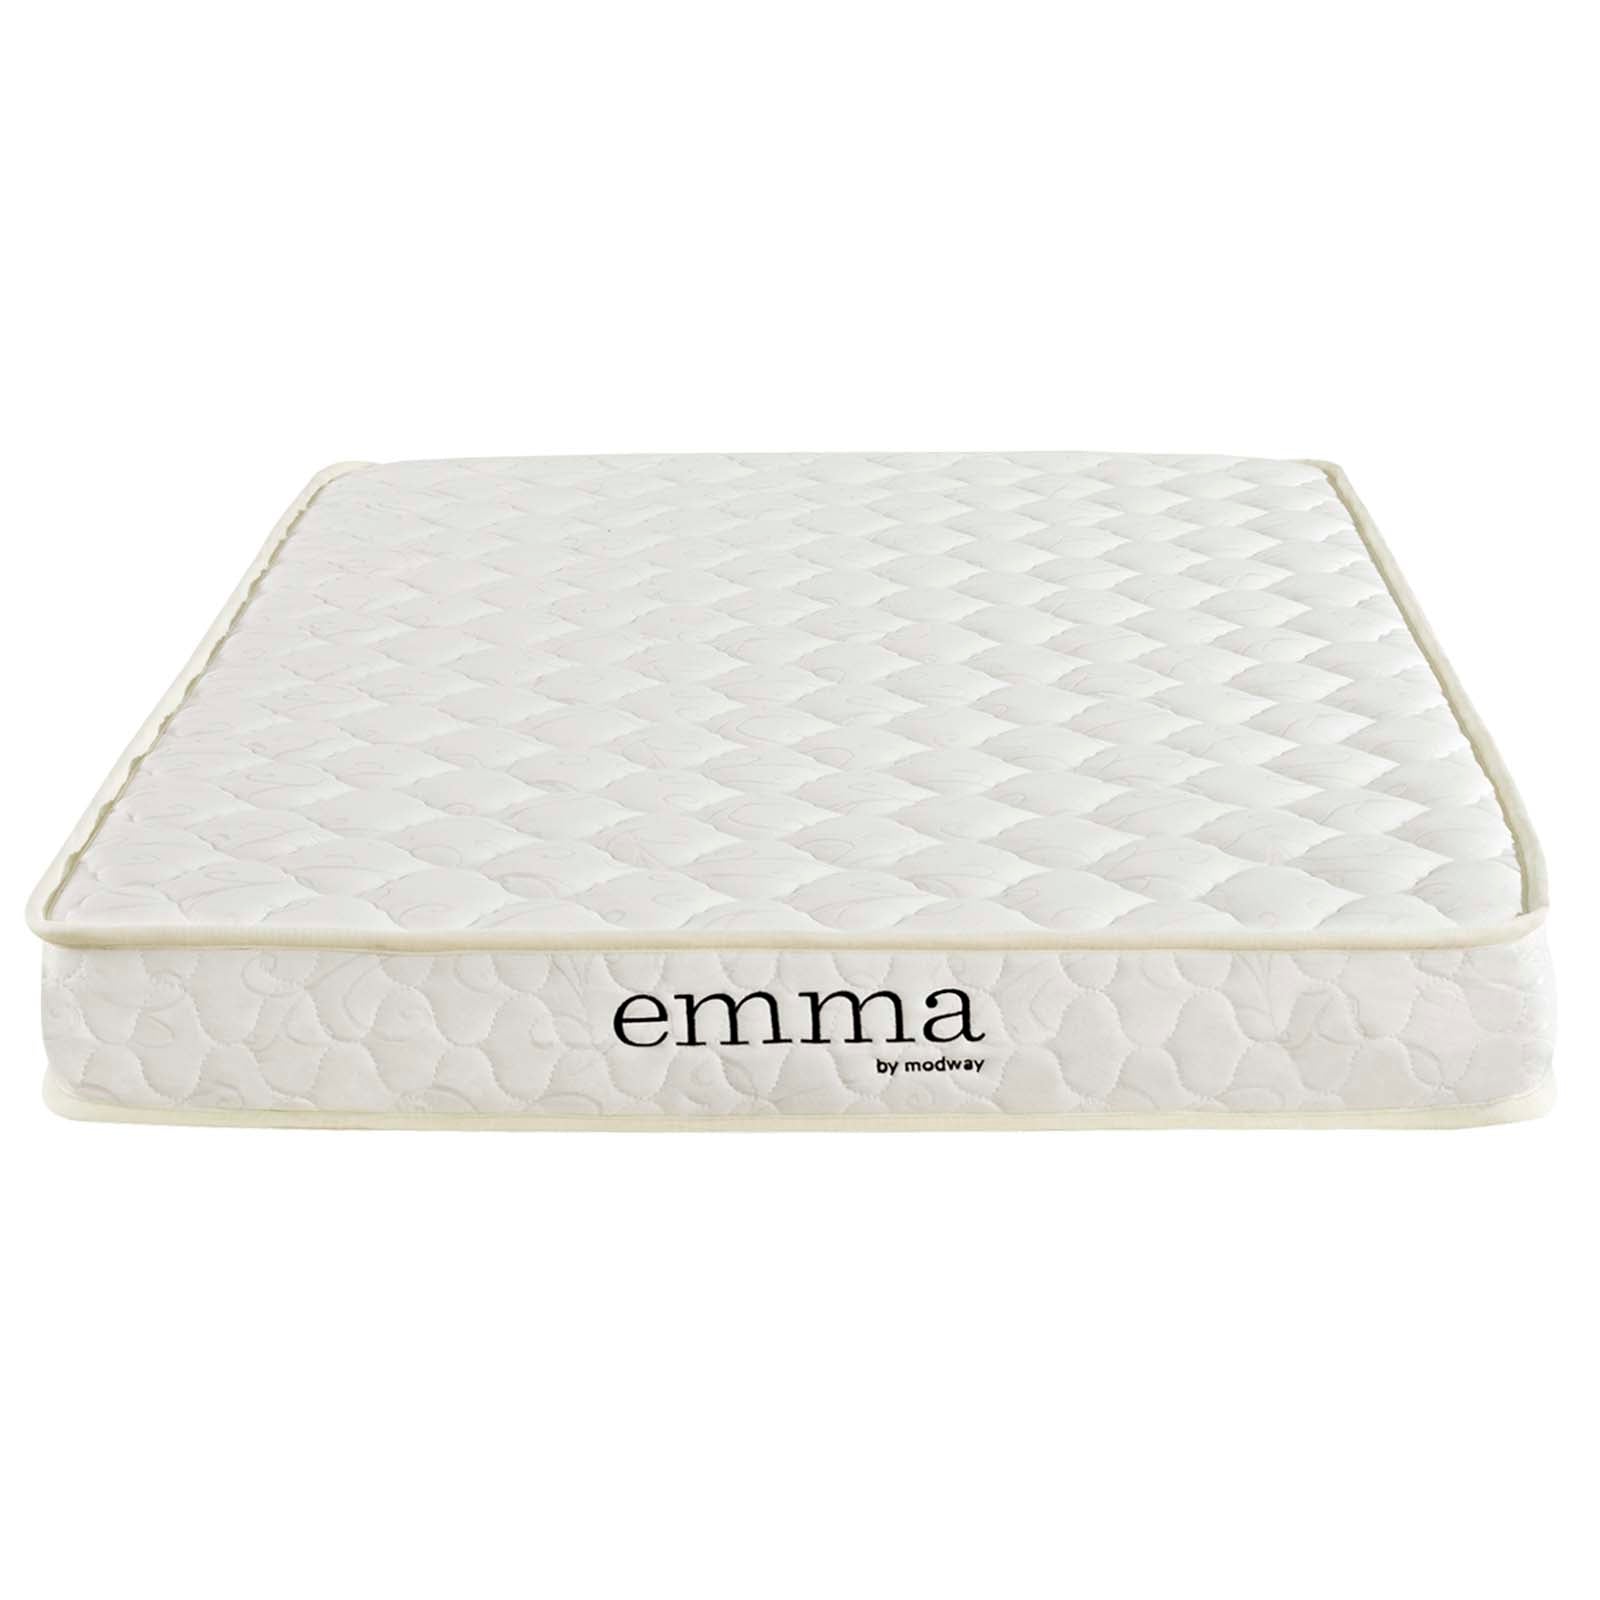 Modway Mattresses - Emma 6" Twin Mattress Foam White (Set of 2)